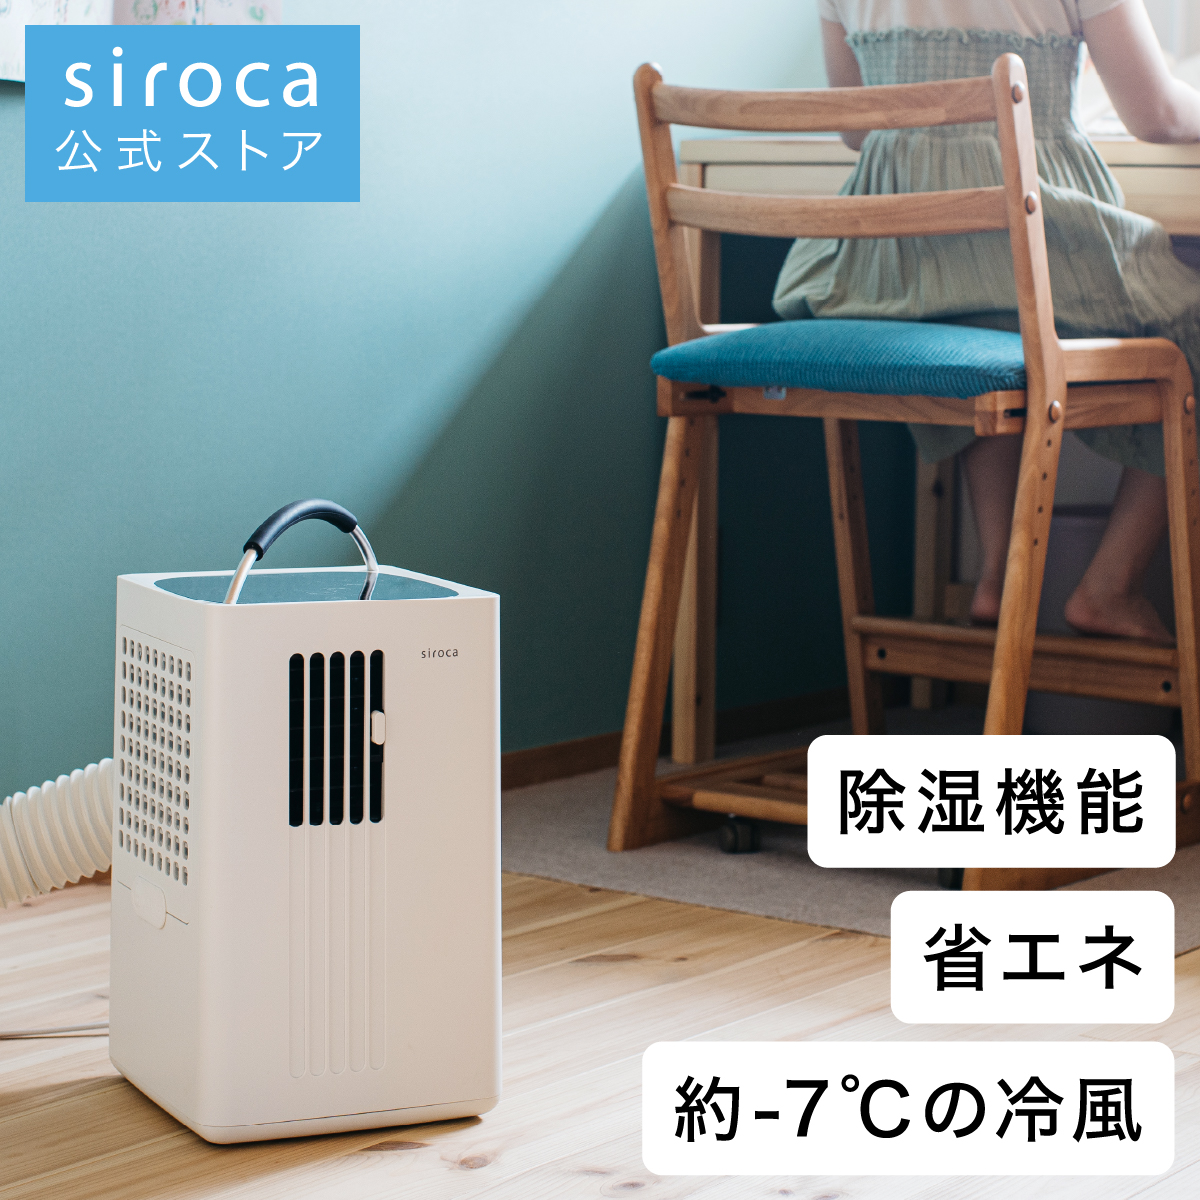 かんたんラ】 siroca ポータブルクーラー SY-D151の通販 by みゆよん's